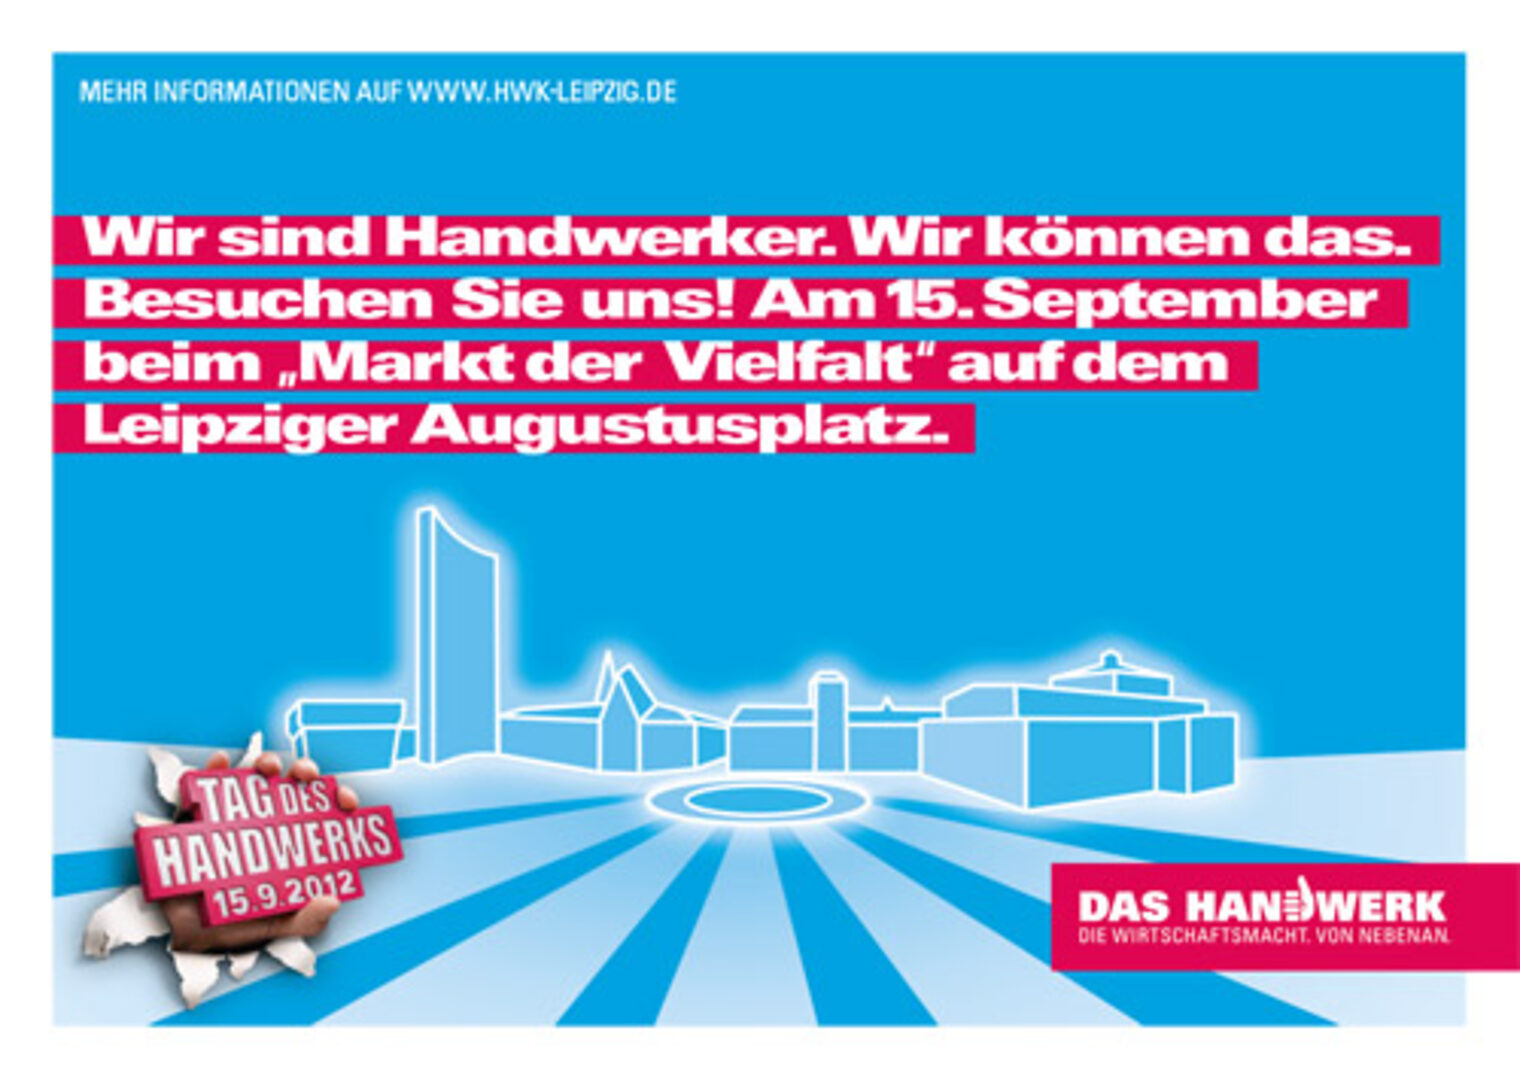 Der "Tag des Handwerks" 2012 in Leipzig 1